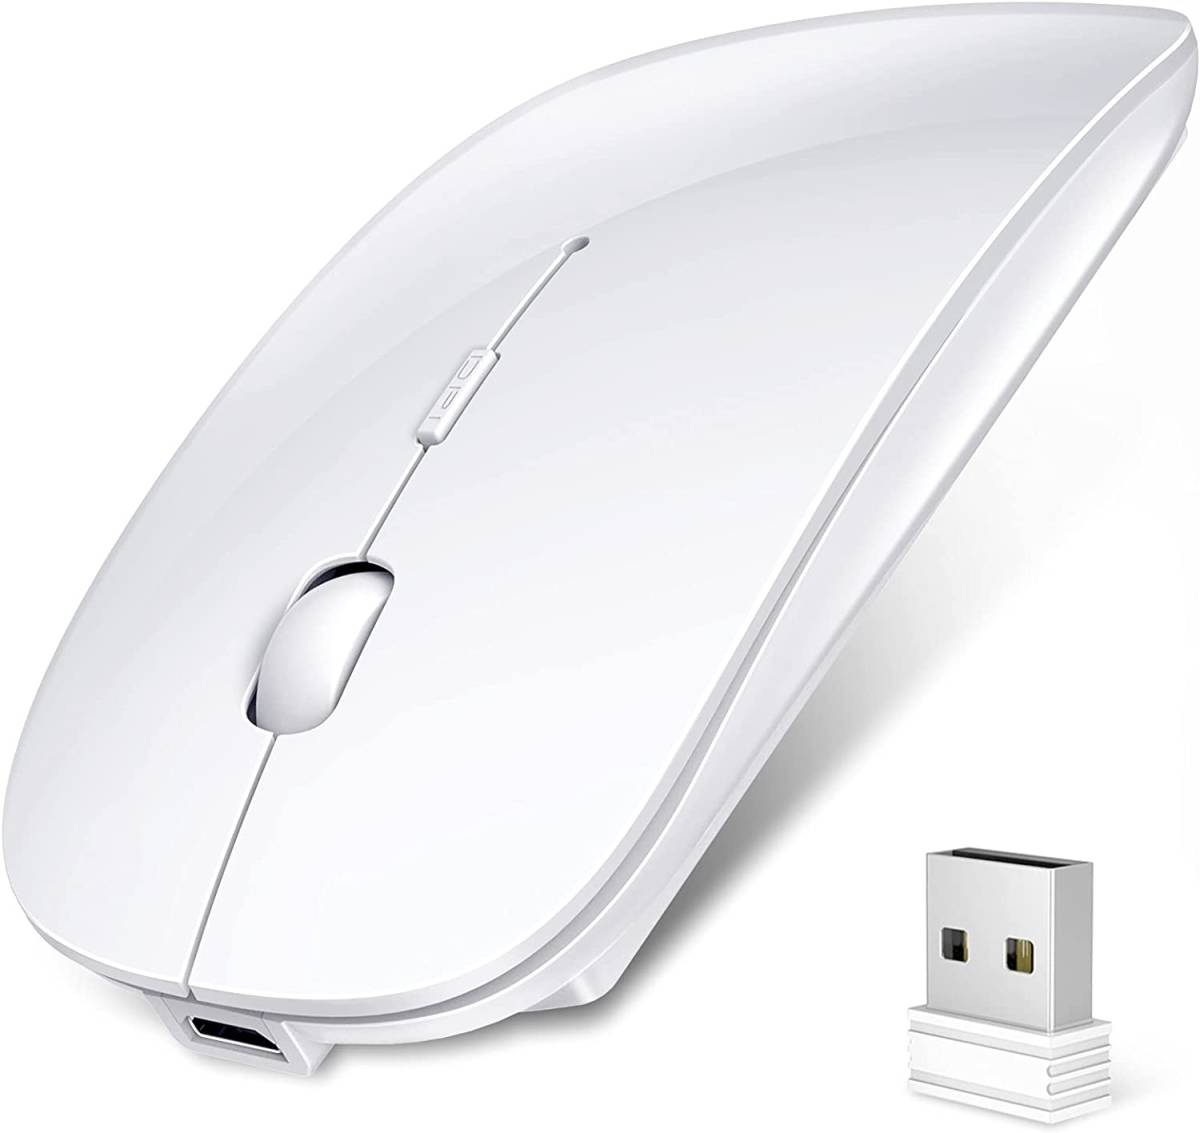 【大特価】ワイヤレスマウス Bluetooth 5.0 マウス 超薄型 静音 充電式 省エネルギー 2.4GHz 3DPIモード 高精度_画像1